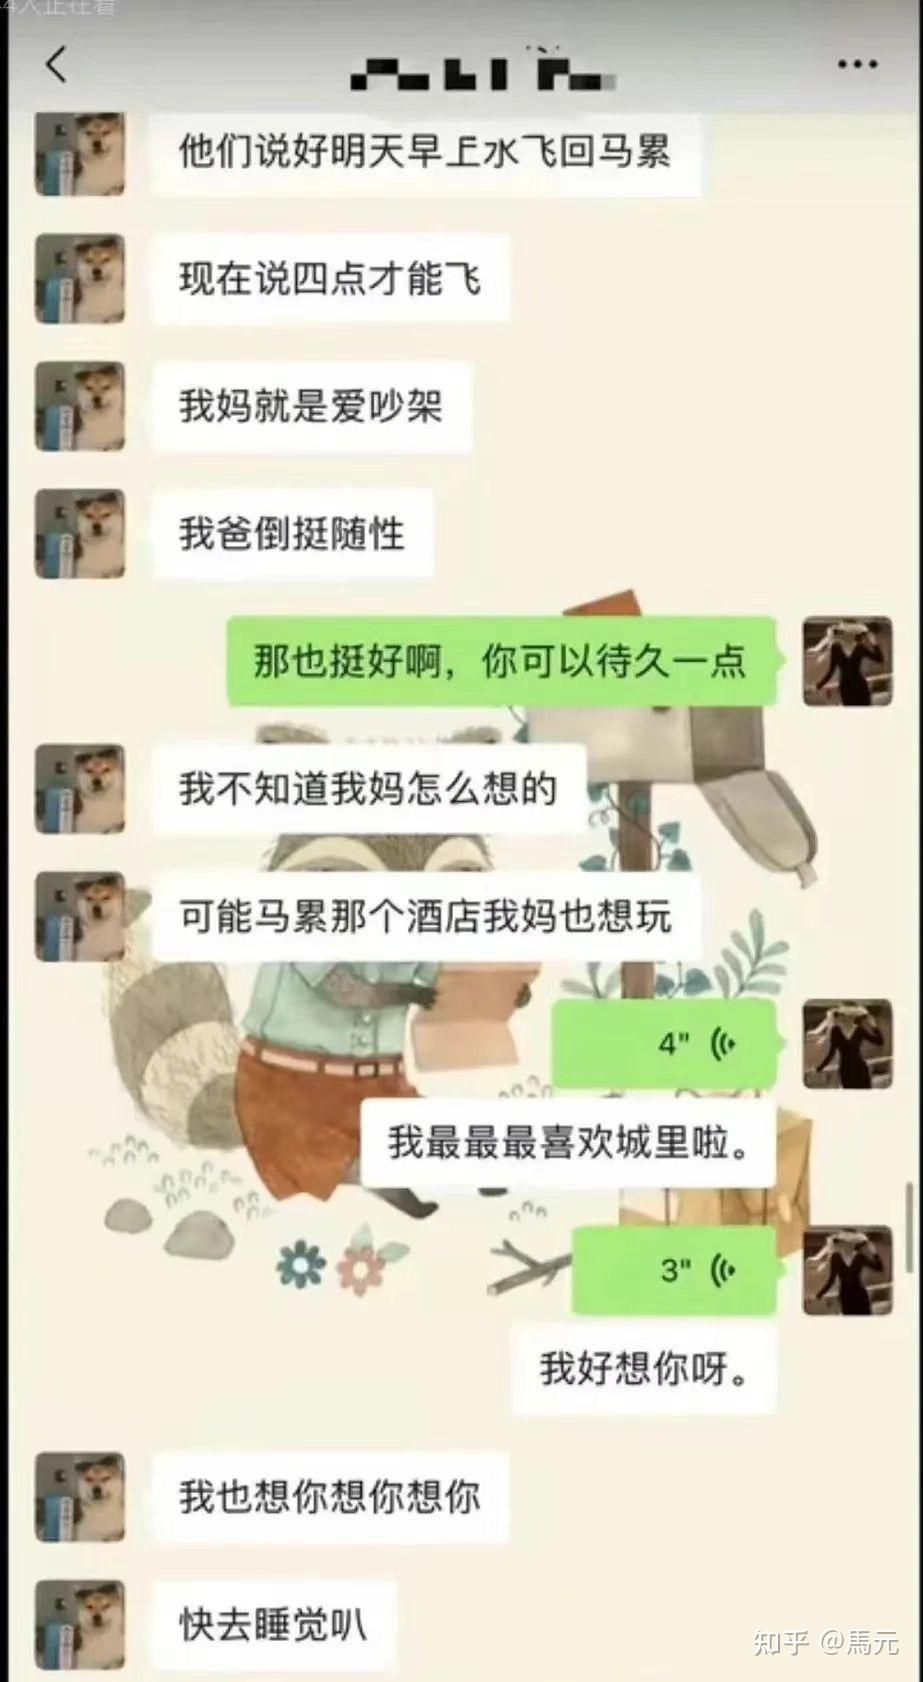 上海女老师出轨16岁学生,聊天记录被爆,让人三观竟毁世界如此疯狂